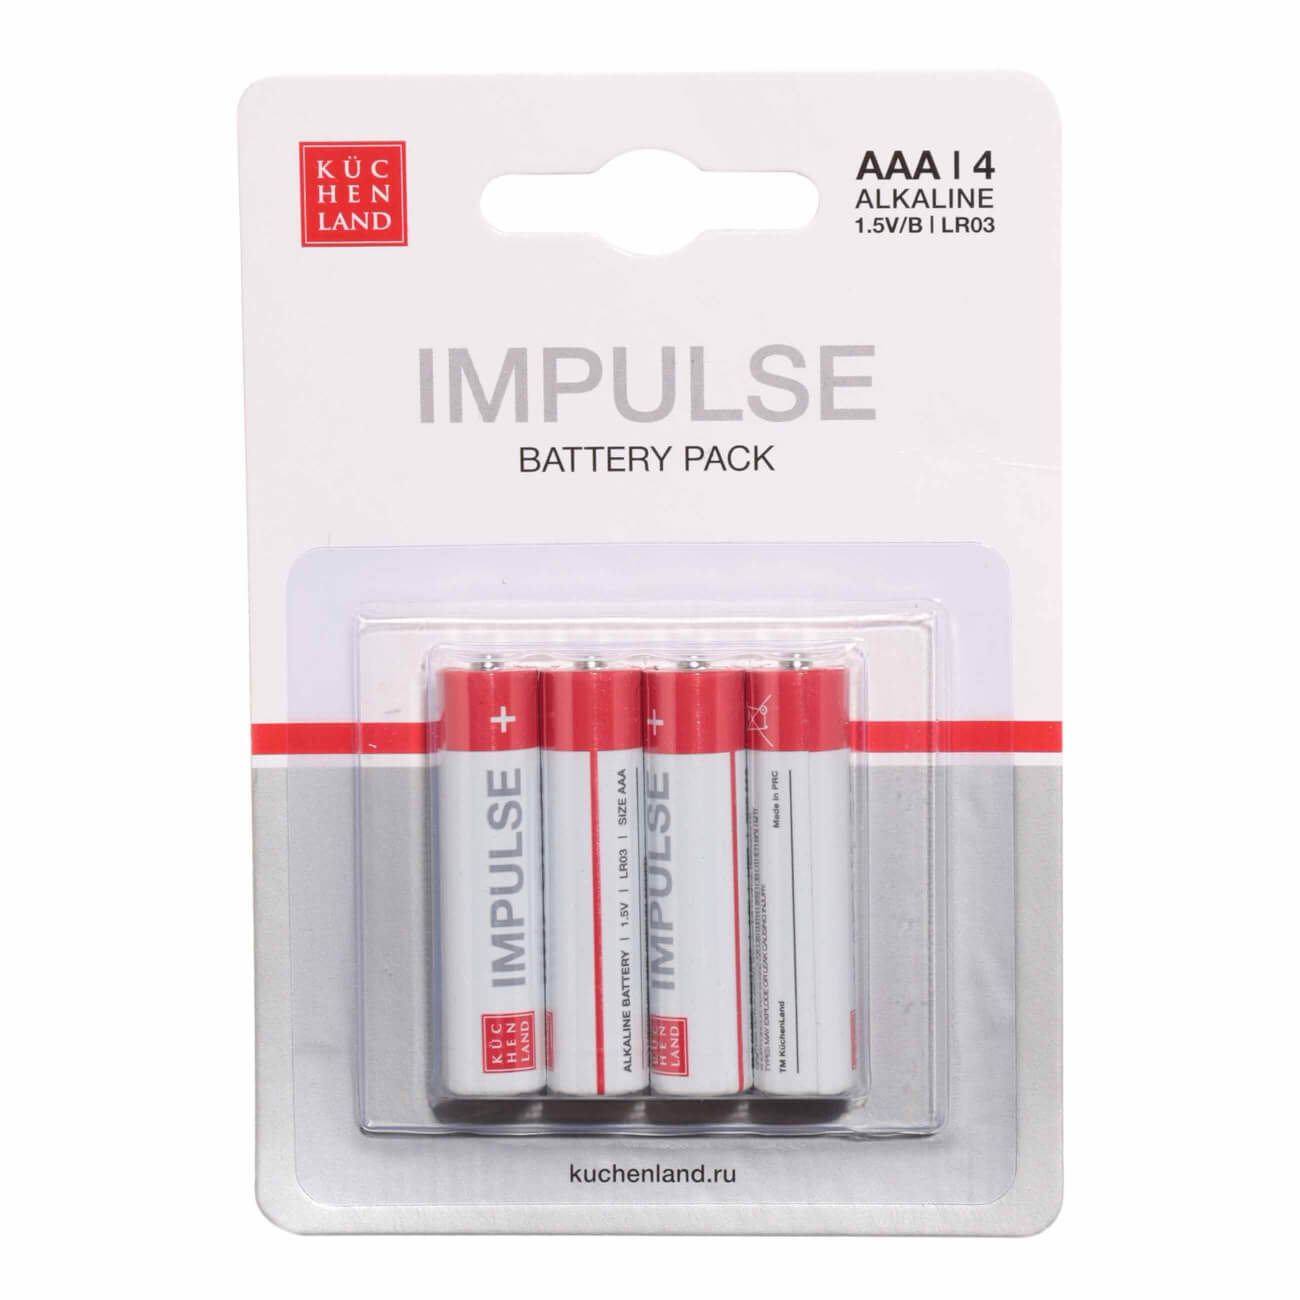 Батарейка AAA LR03, щелочная, 4 шт, Impulse батарейка aaa lr03 щелочная 6 шт impulse